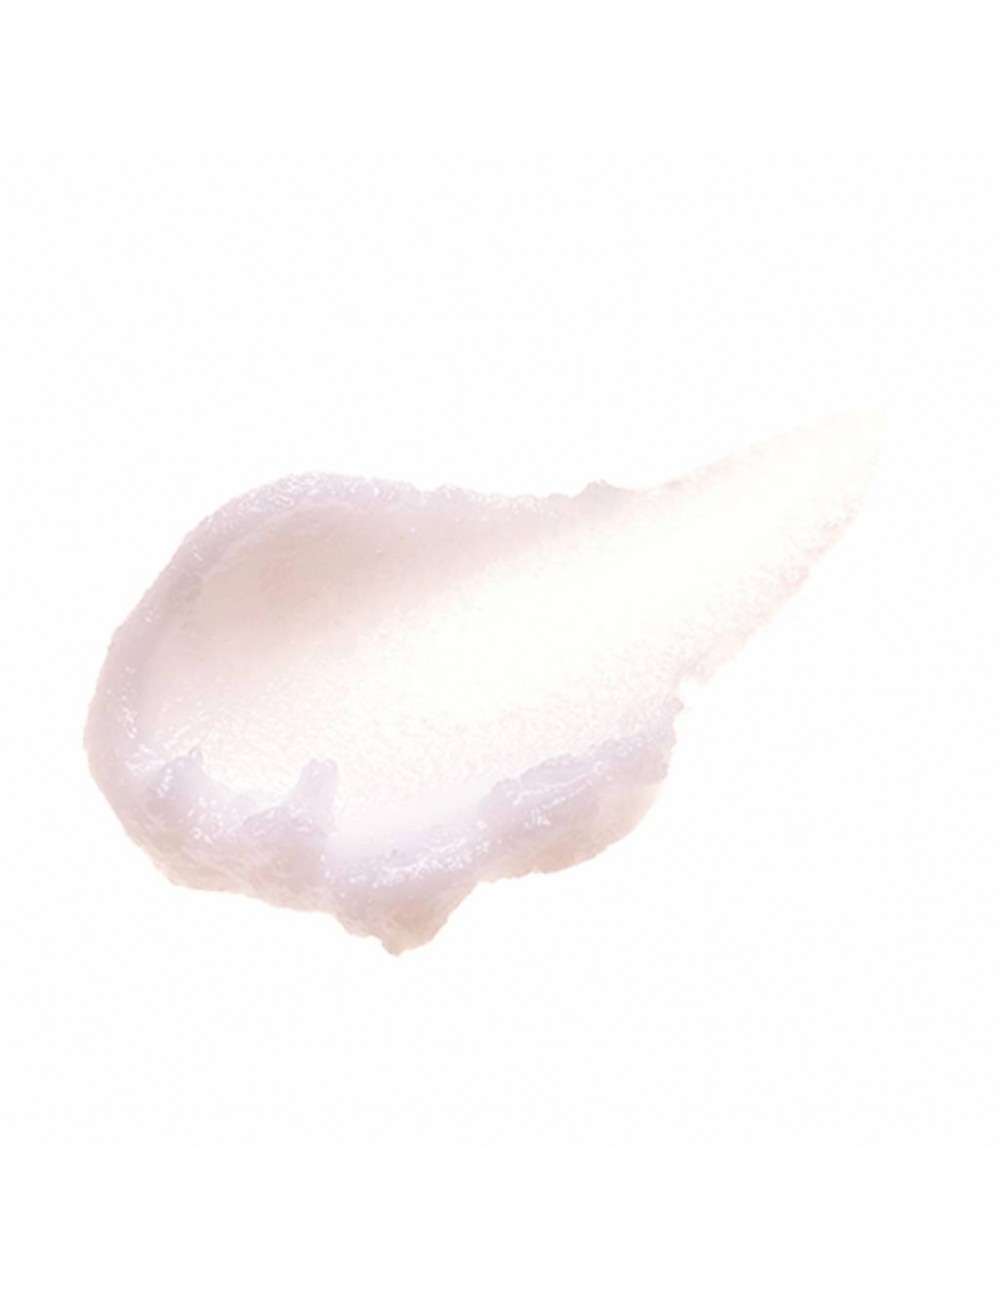 Aceites Limpiadores al mejor precio: Desmaquillante Clean It Zero Original Cleansing Balm de Banila Co. en Skin Thinks - Piel Seca